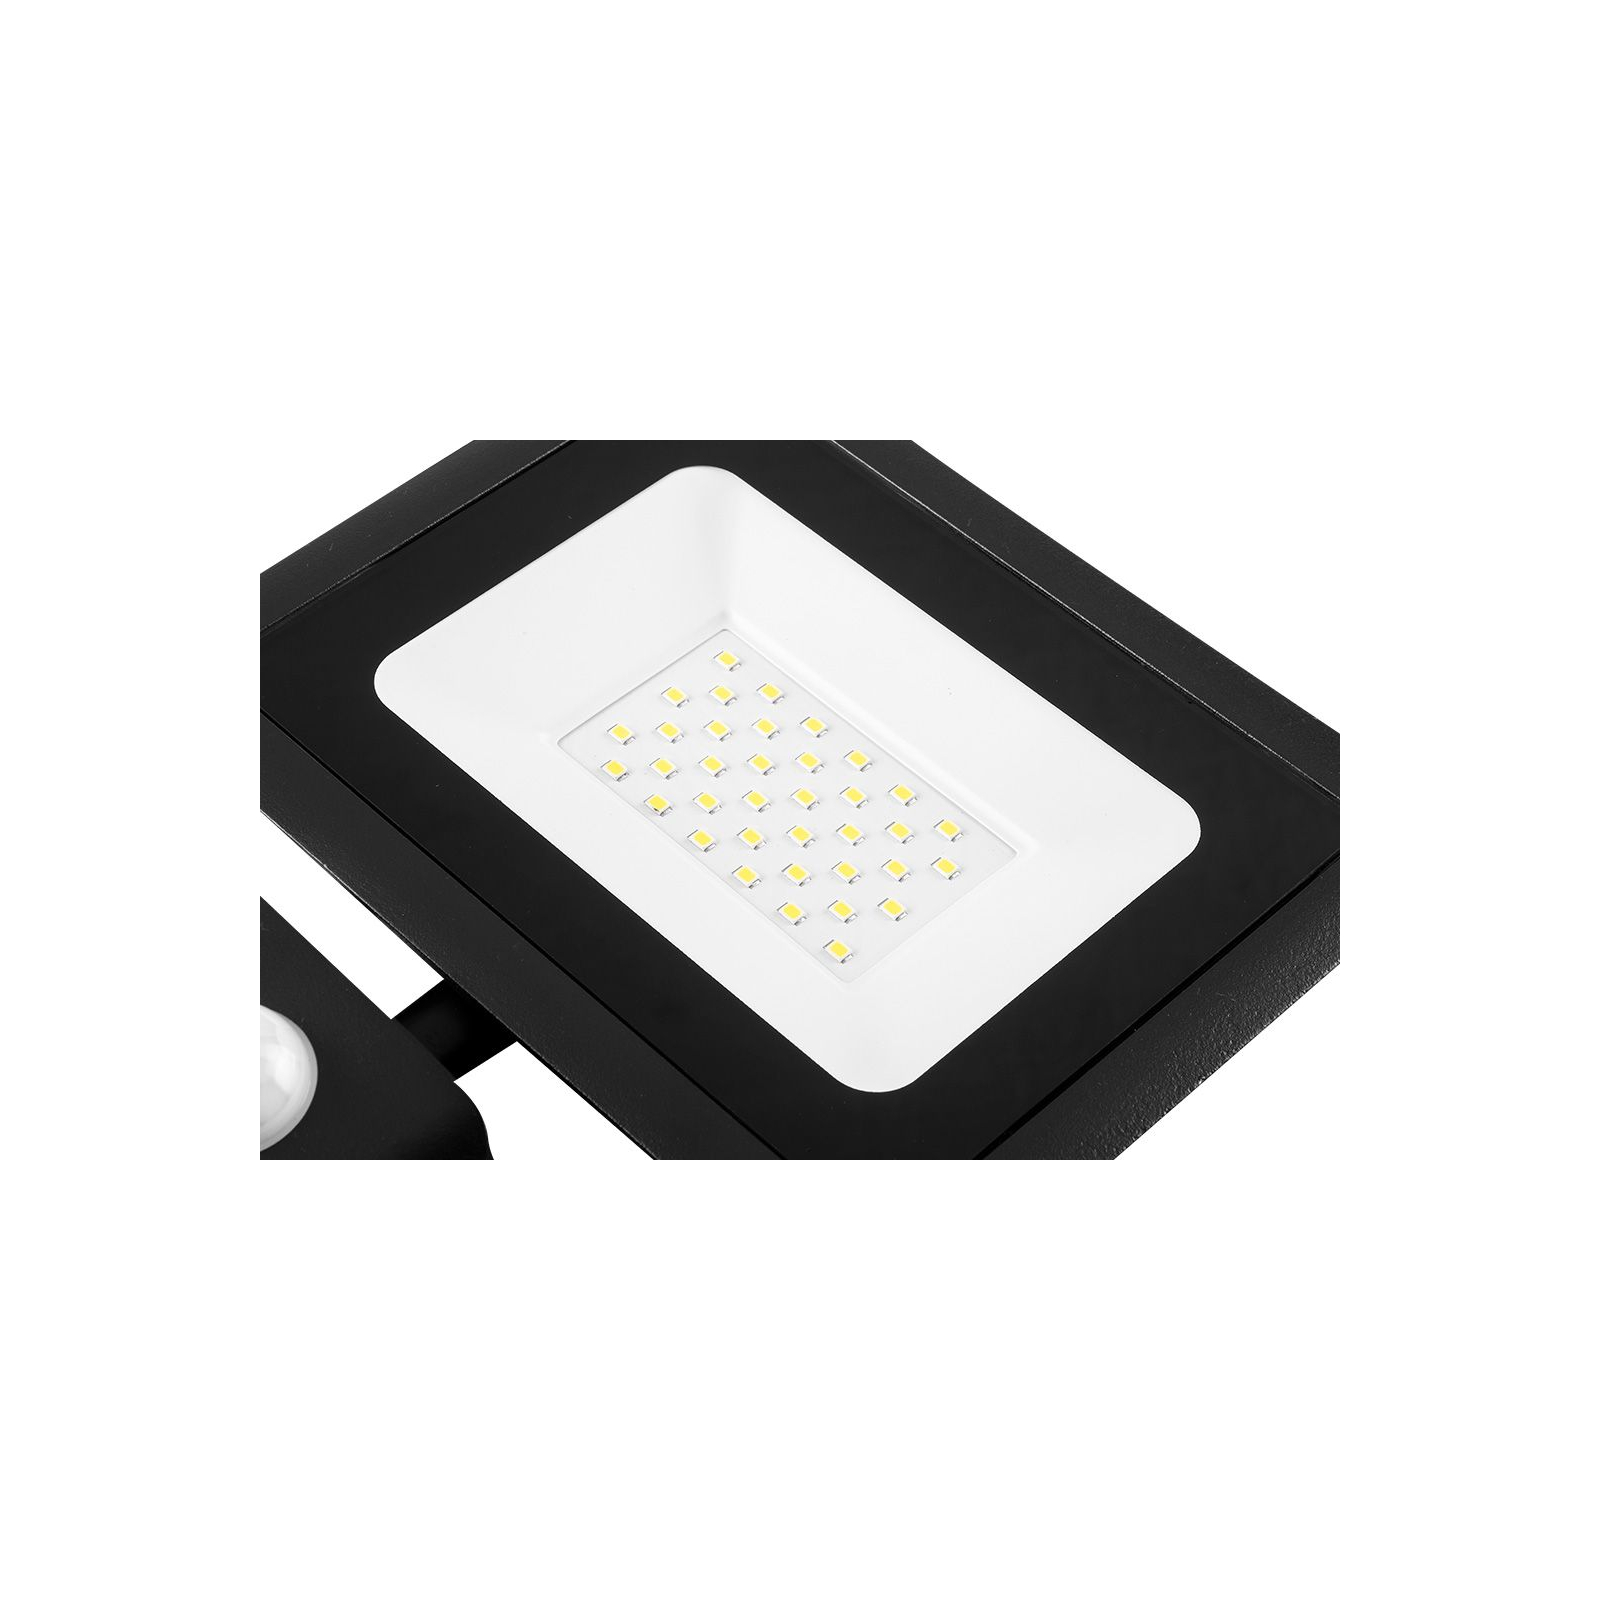 Прожектор Neo Tools алюміній, 220, 30Вт, 2400 люмен, SMD LED, кабель 0.15 м без (99-049) зображення 2